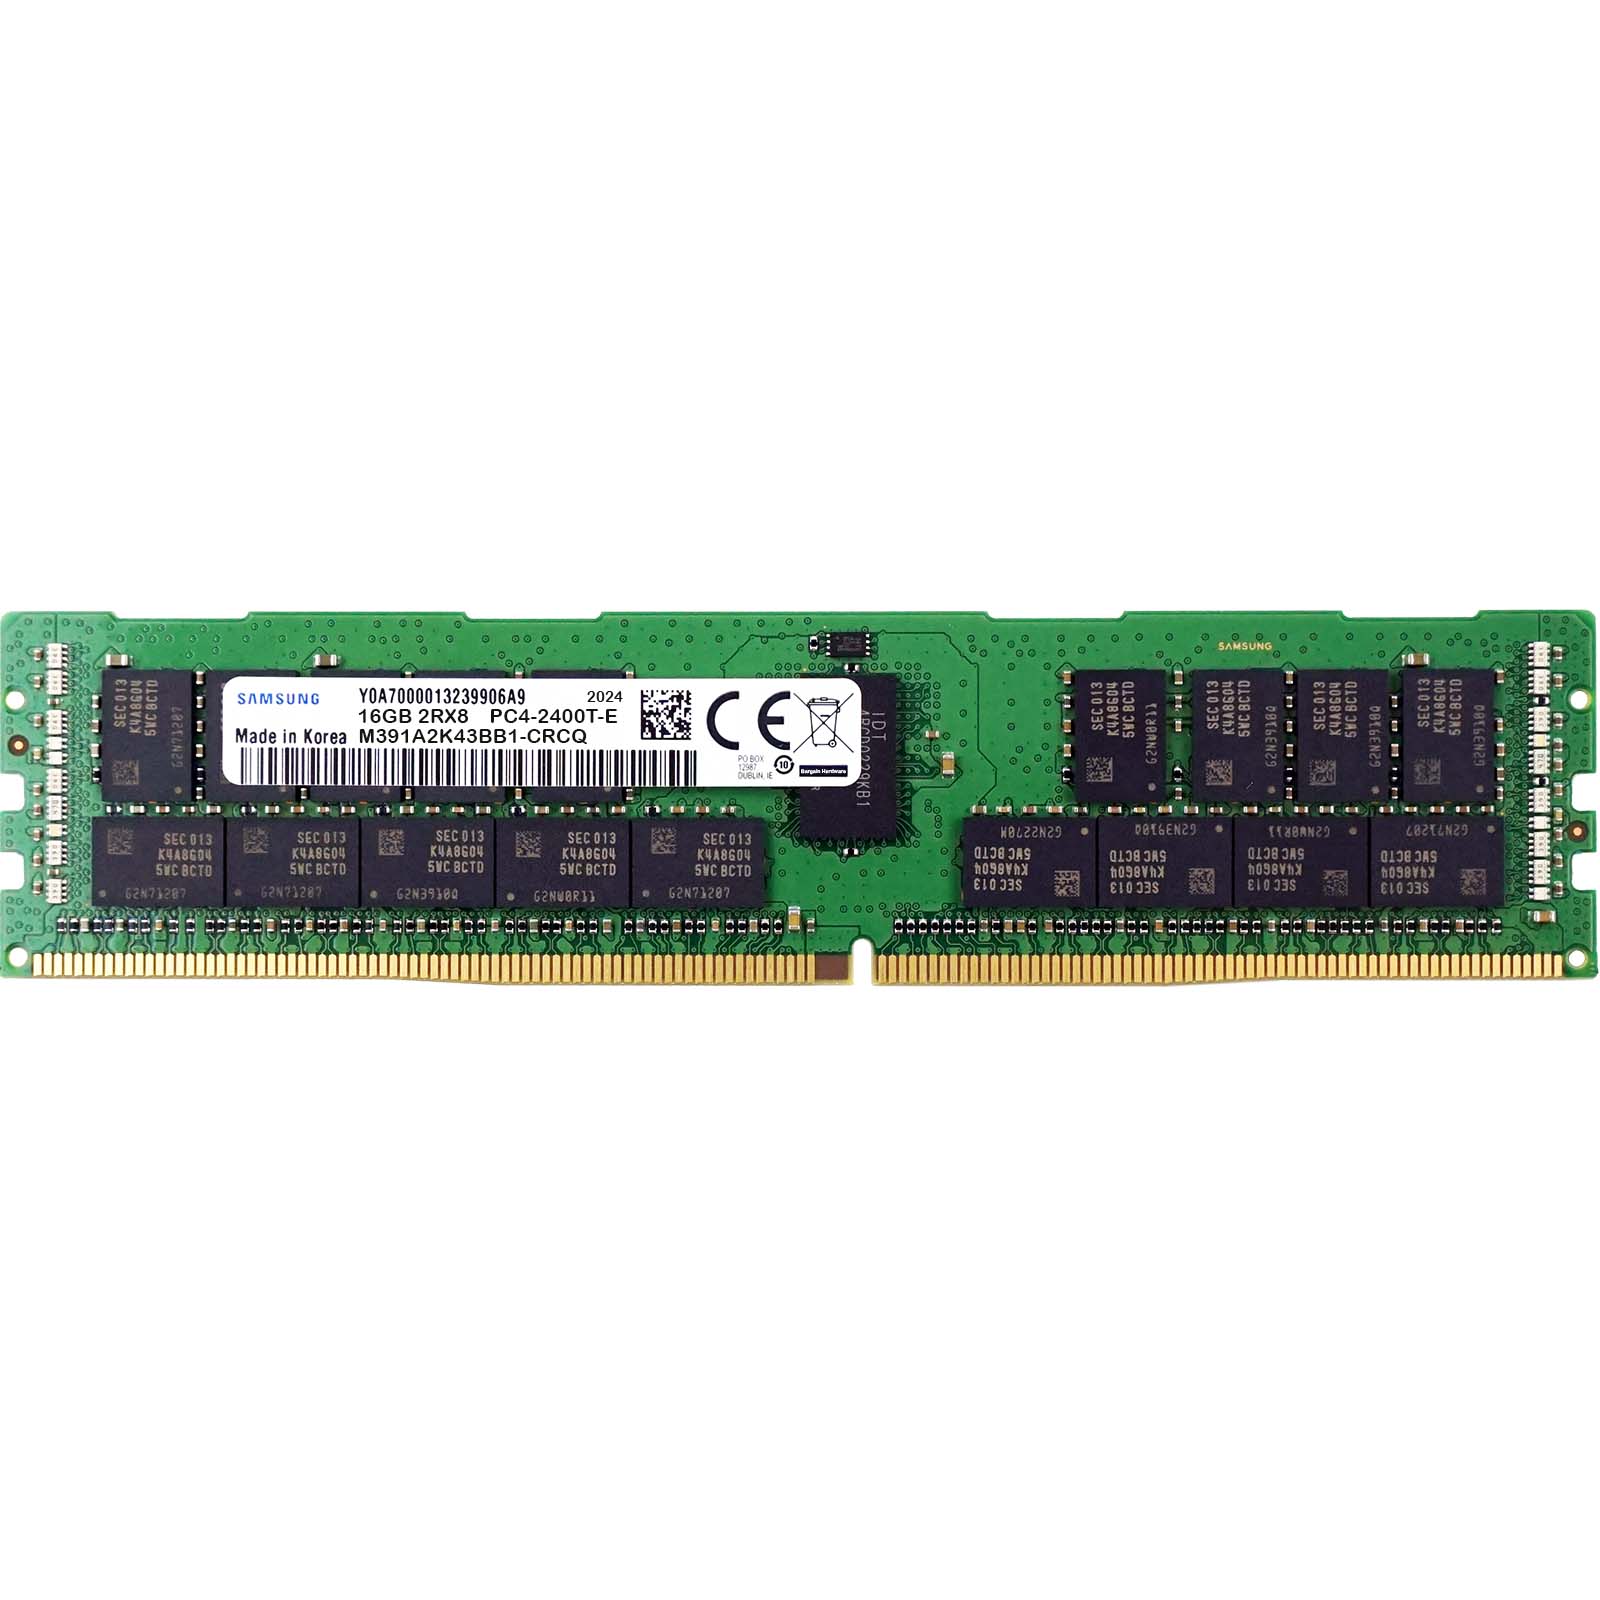 Samsung M391A2K43BB1-CRCQ 16GB PC4-19200T-E 2RX8 DDR4-2400MHz RAM